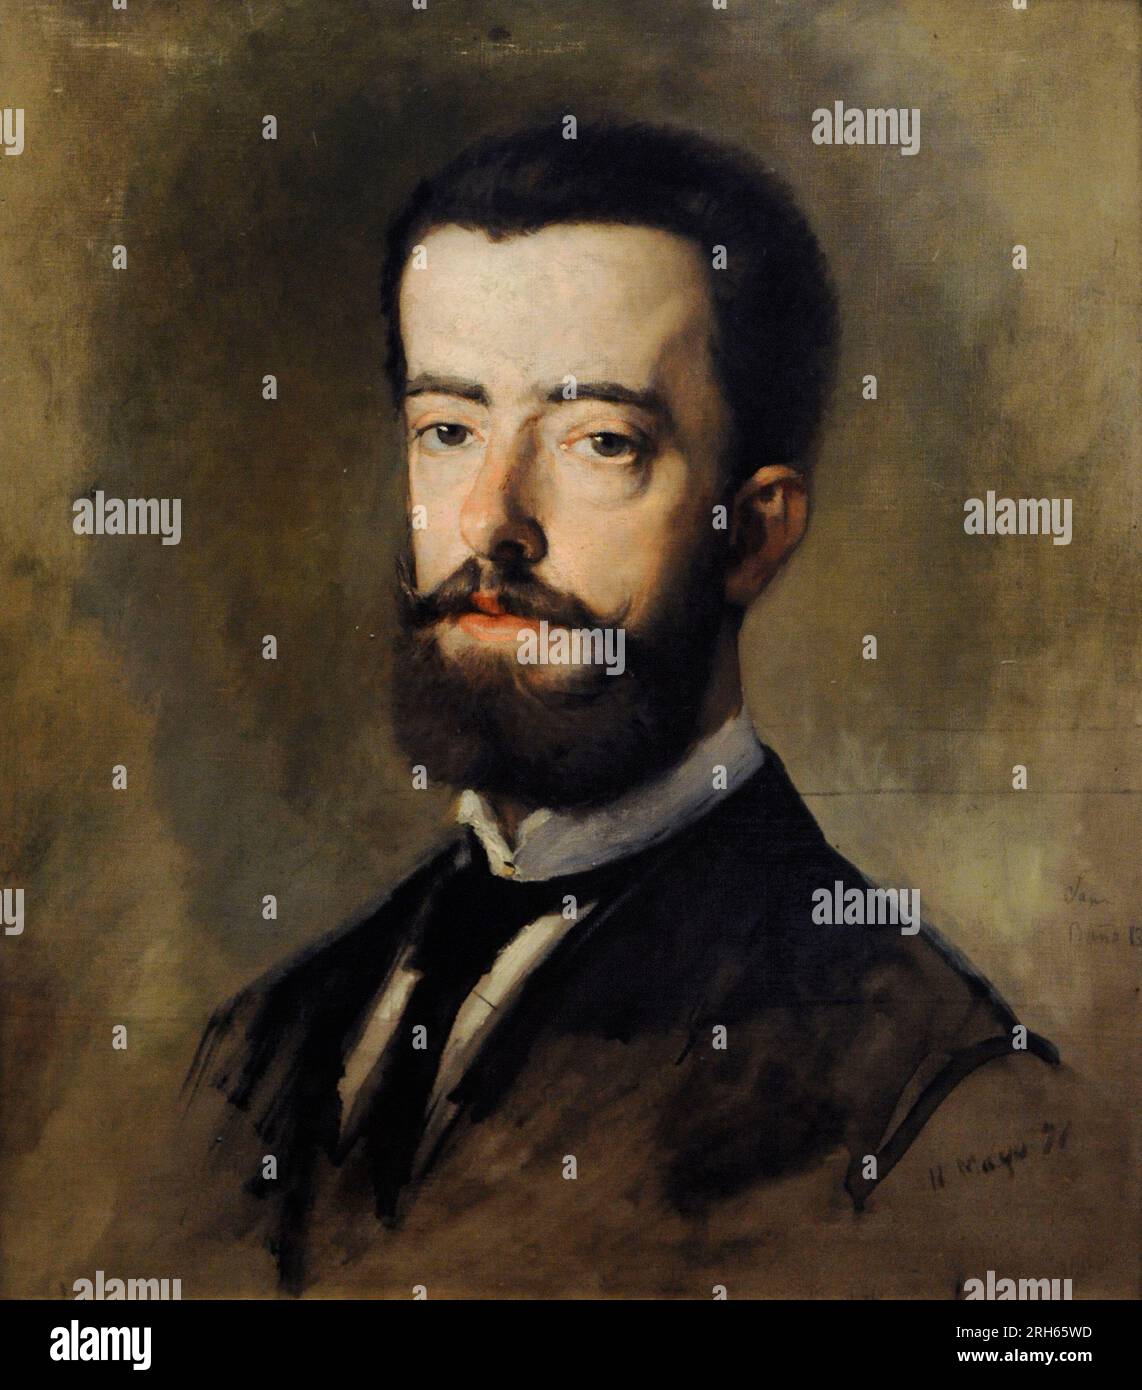 Amadeo Ier de Savoie (1845-1890). Roi d'Espagne. Portrait de Francisco sans y Cabot (1828-1881), 1871. Musée d'Histoire, Madrid, Espagne. Banque D'Images